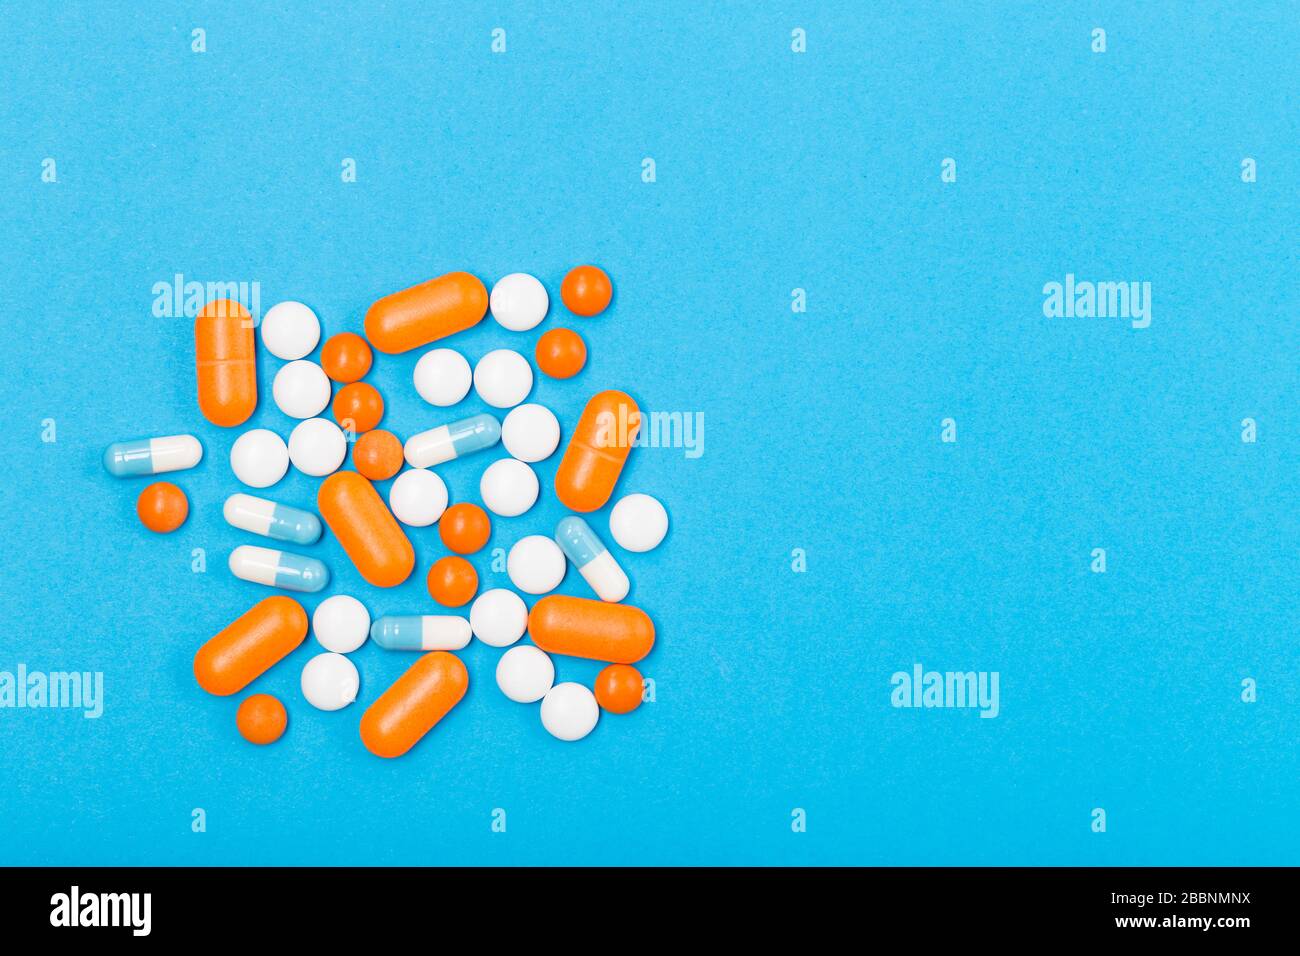 Assortiment de pilules, comprimés et capsules de médecine pharmaceutique sur fond bleu. Espace libre. Concept de santé. Banque D'Images